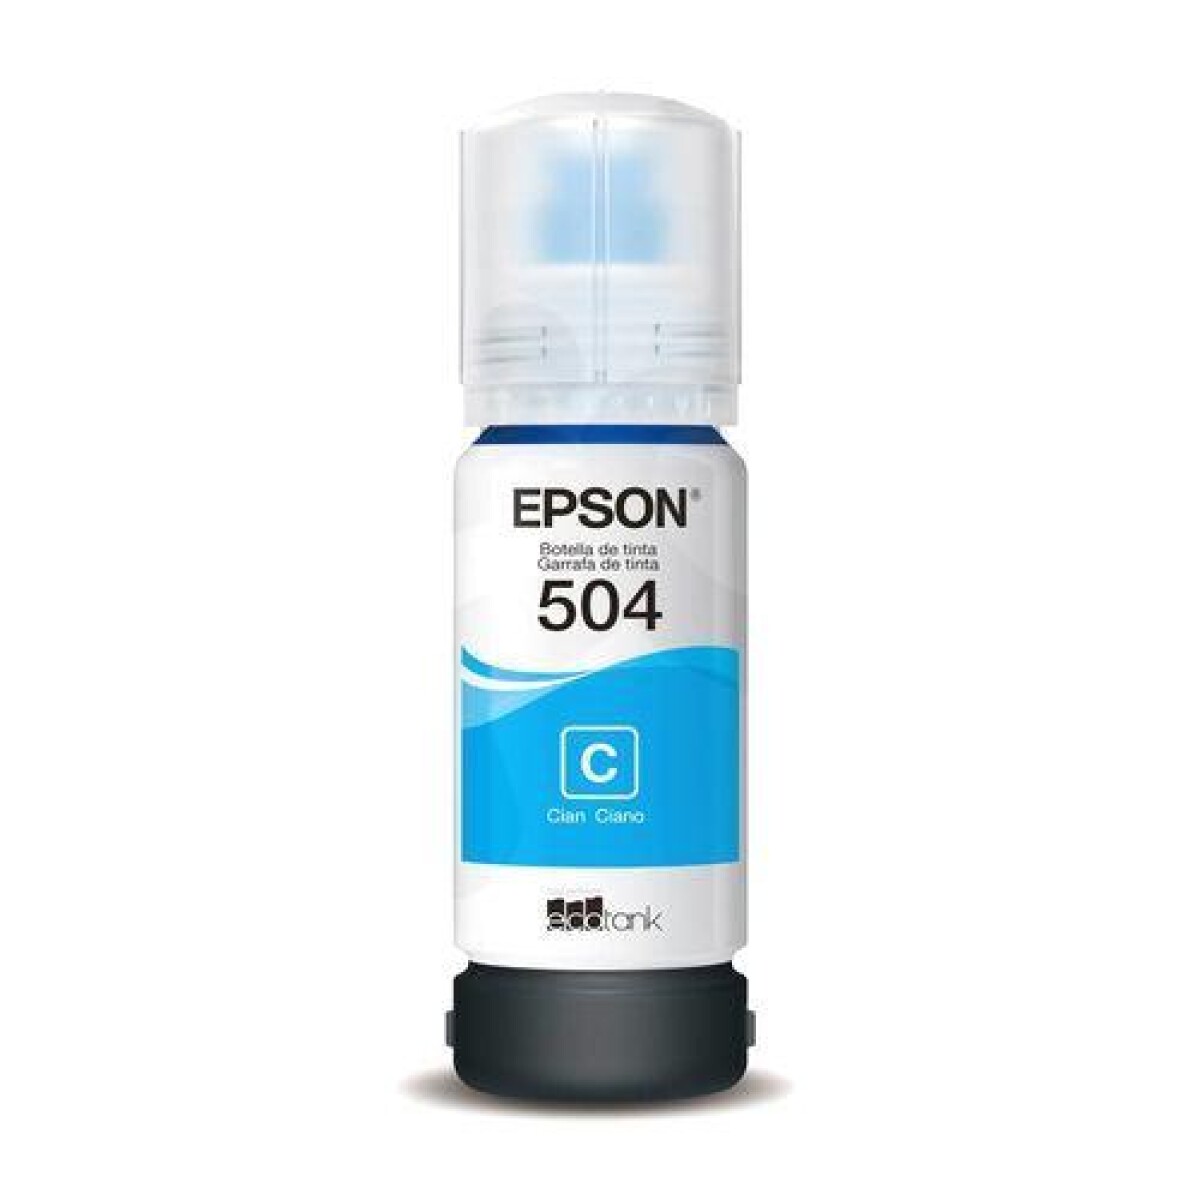 Botella de tinta epson t504220 70ml - cyan Cyan